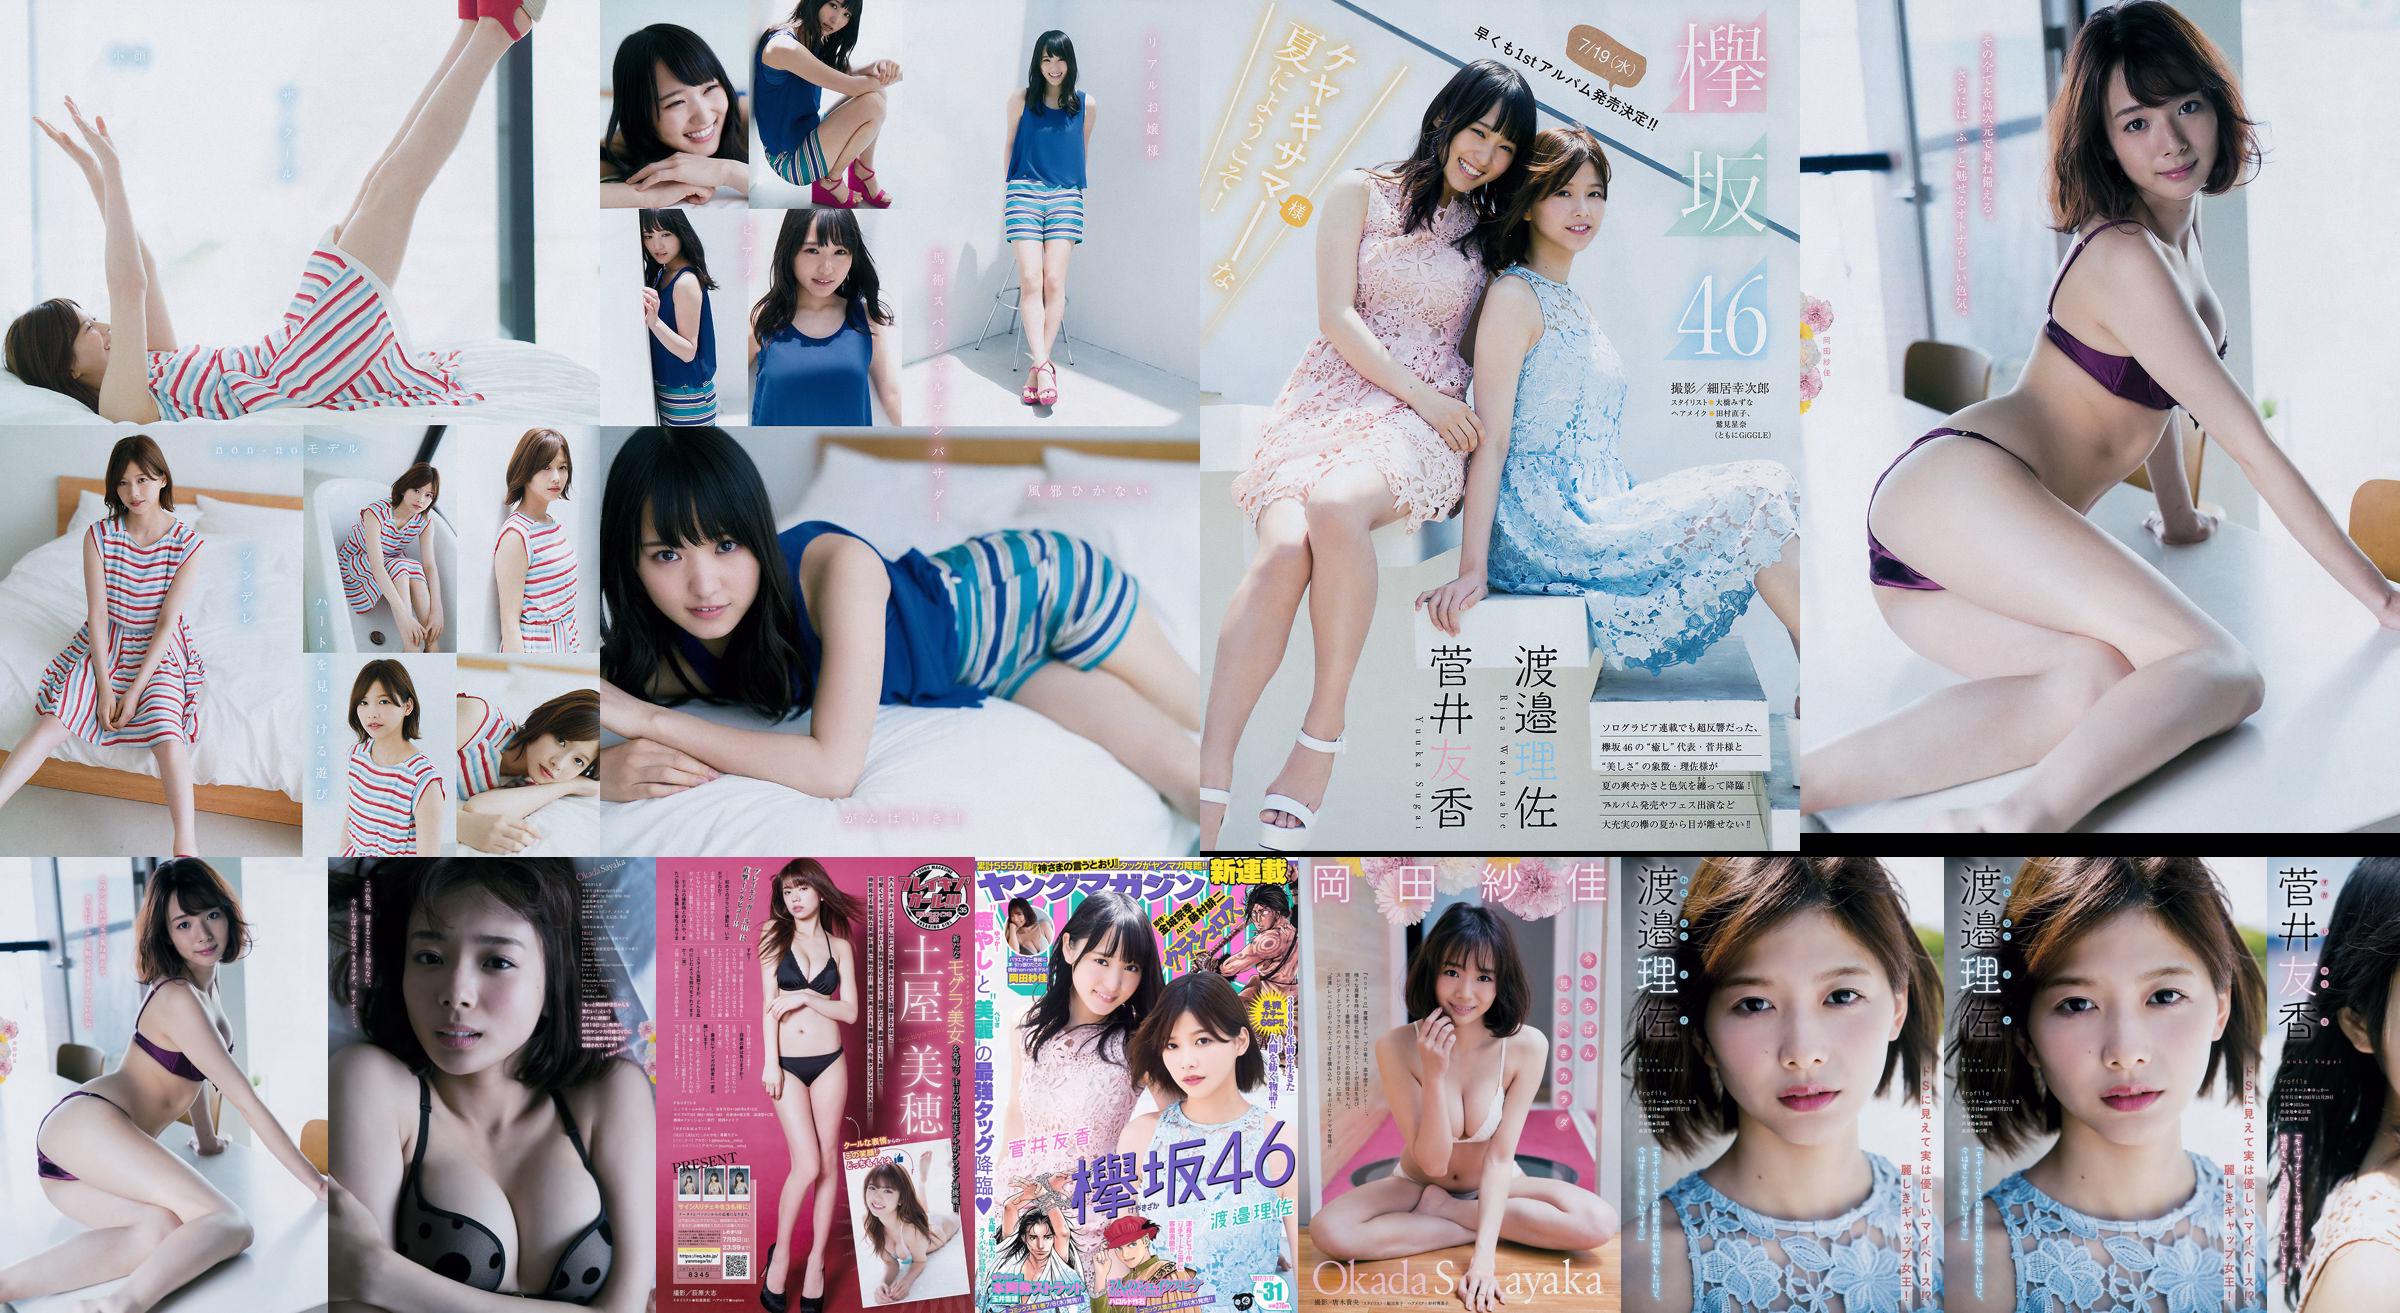 [Young Magazine] Watanabe Risa, Sugai Yuka, Okada Saika 2017 No.31 Photo Magazine No.b322ed Página 1